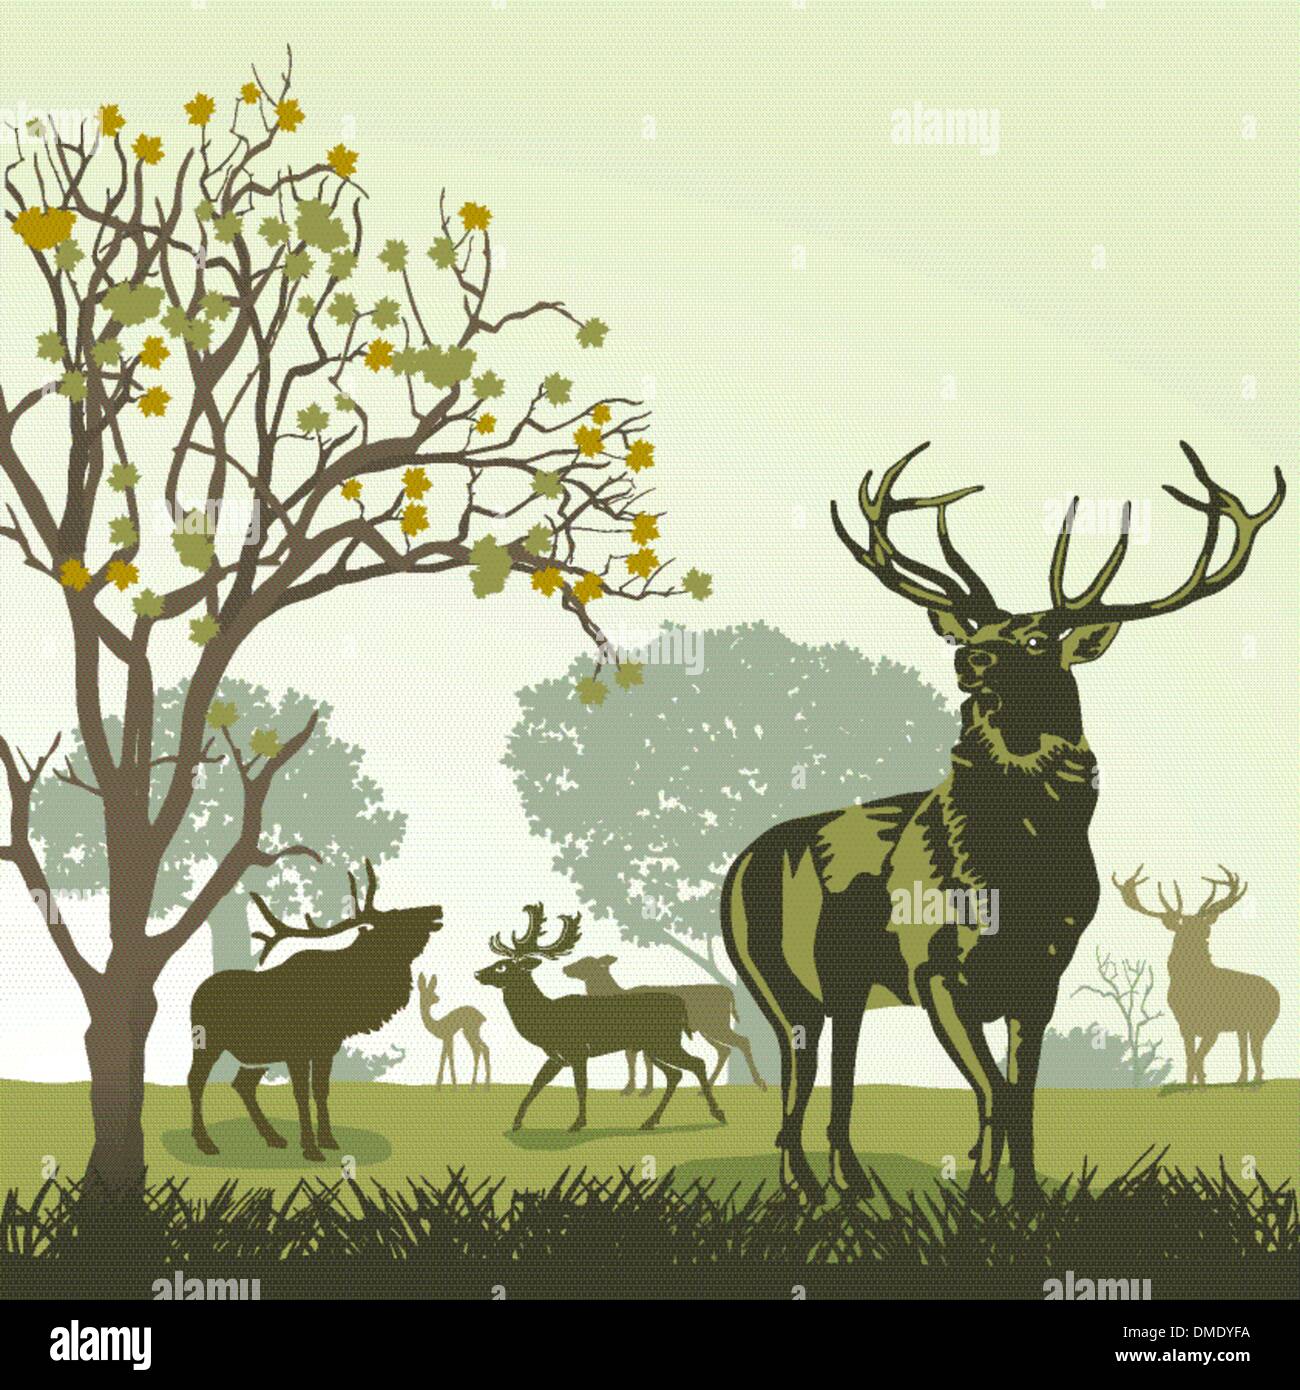 Deer and wildlife in autumn Stock Vector